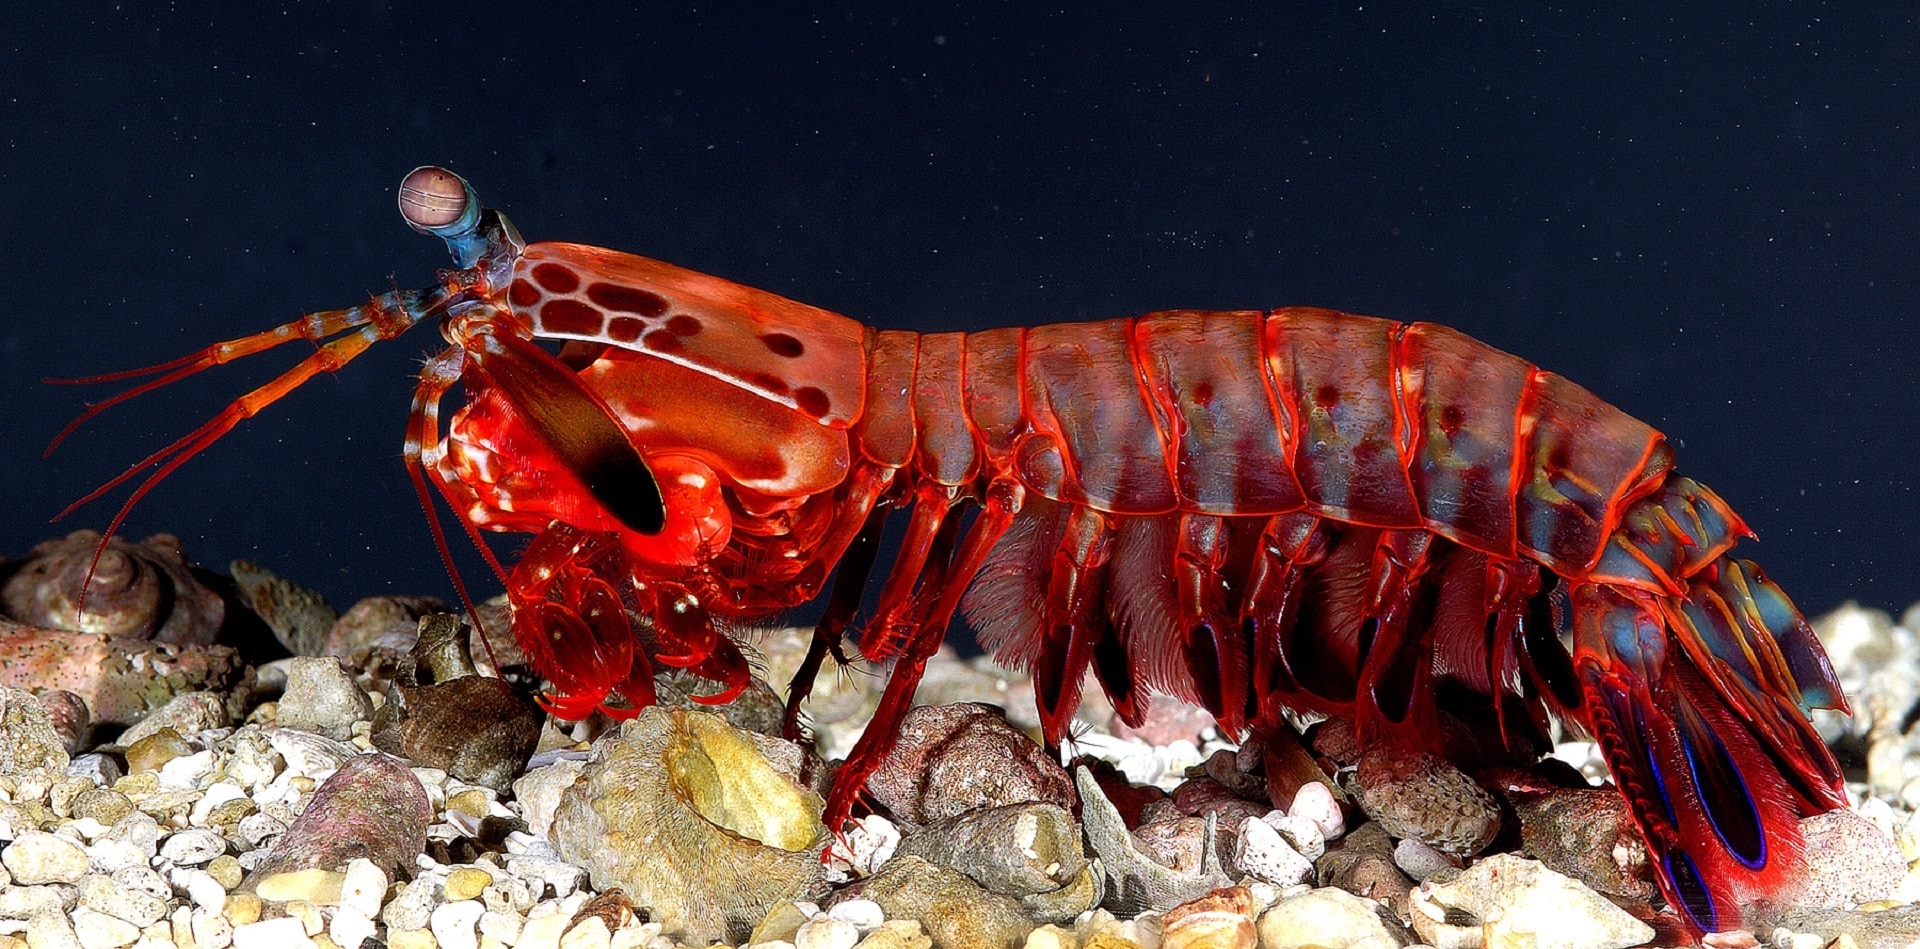 Crustacean, Mantis Shrimp, Female, underwater, red